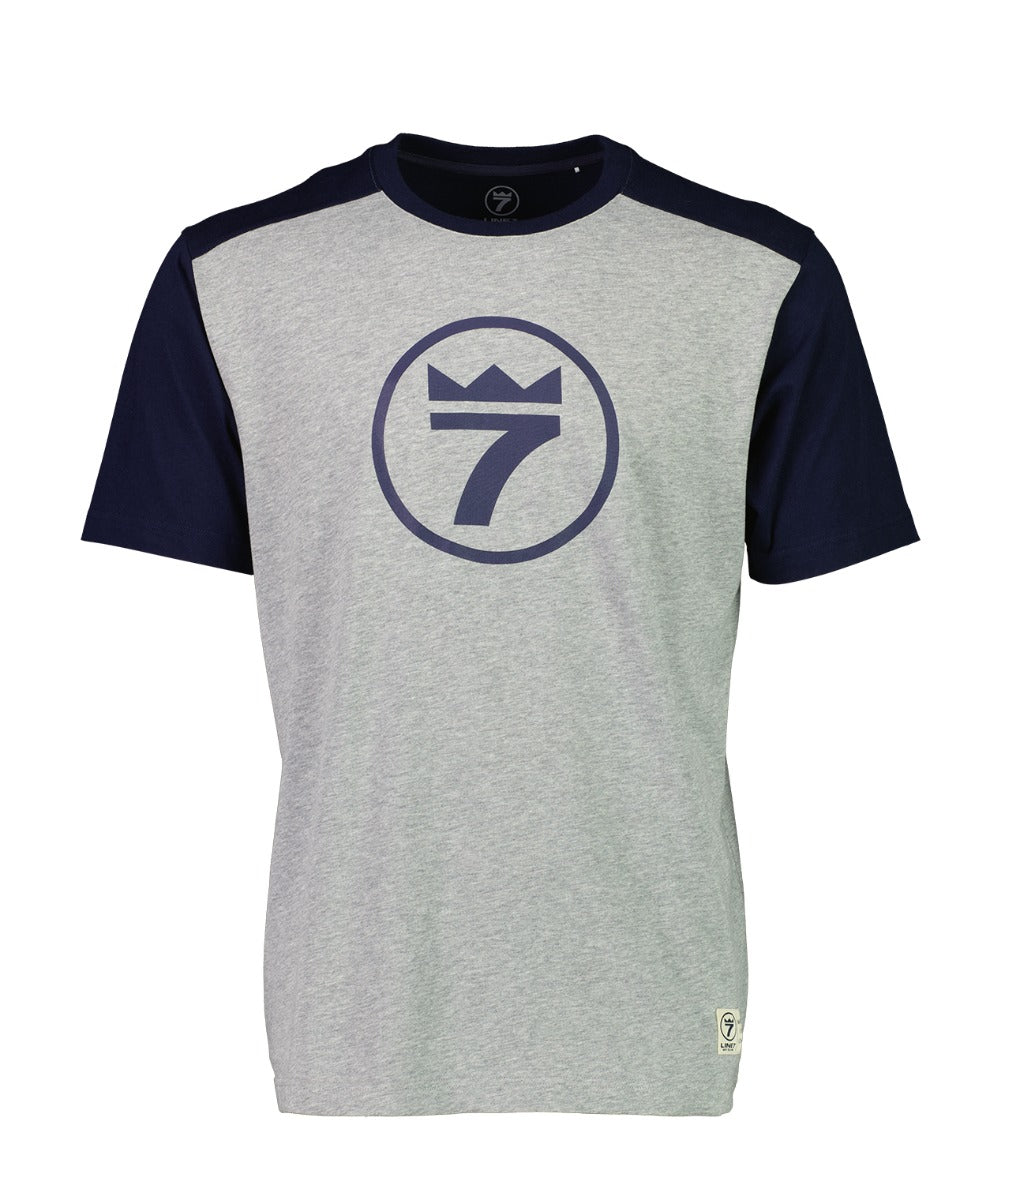 line-7-men-s-lucky-7-t-shirt_2.jpg